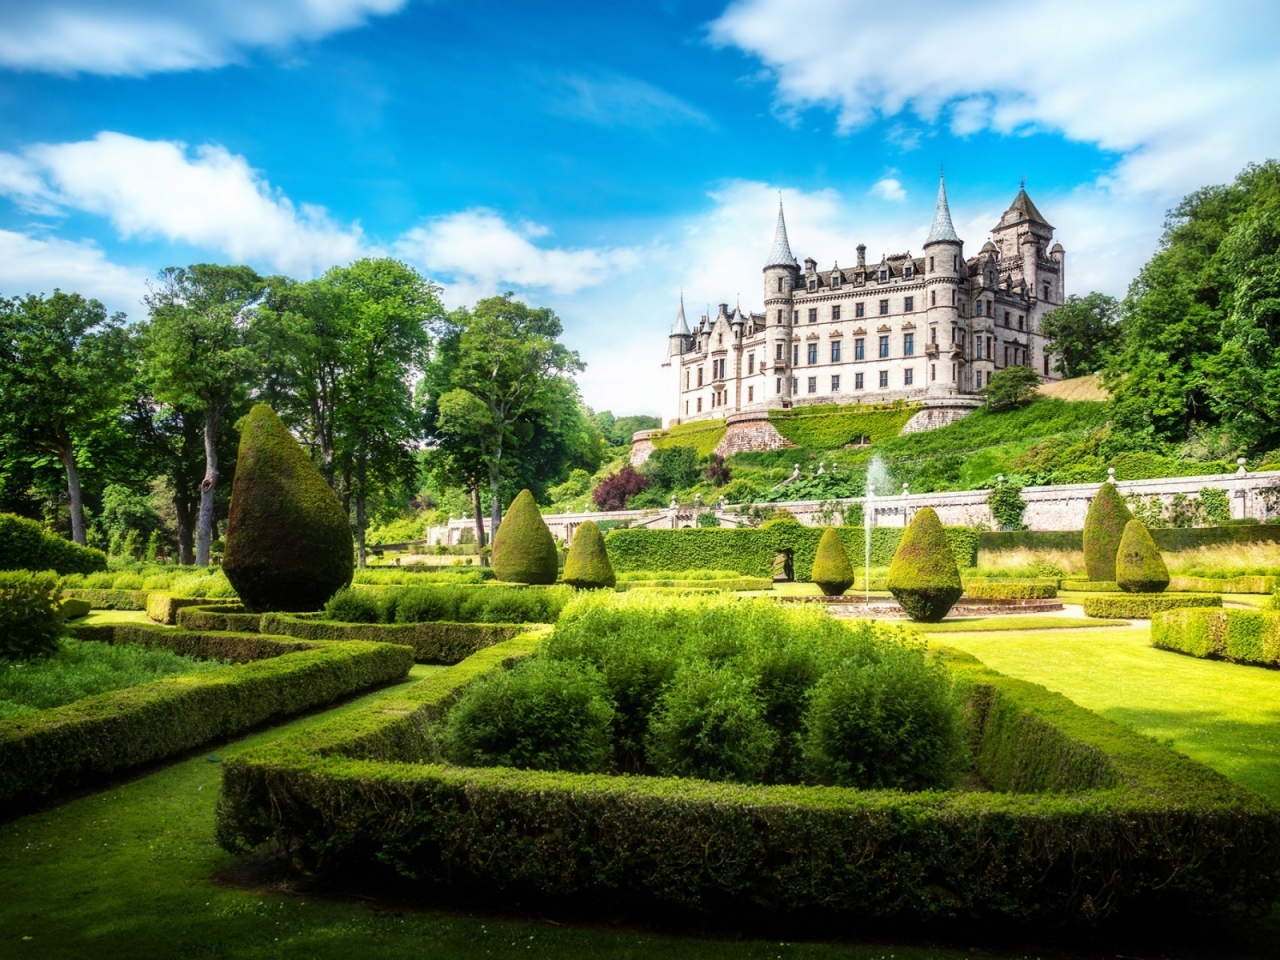 Dunrobin Castle Garden for 1280 x 960 resolution